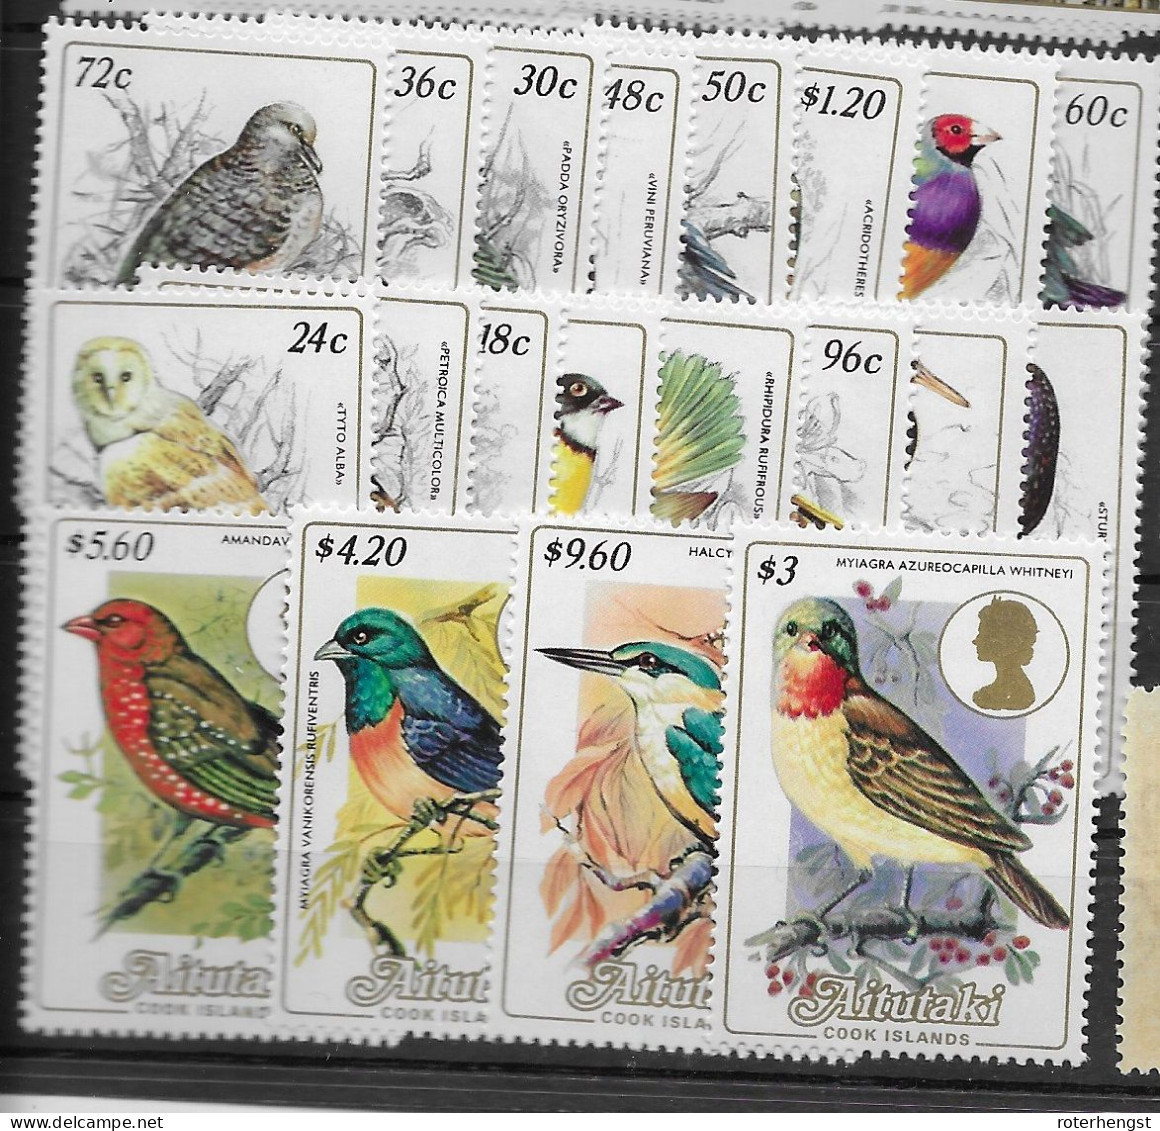 Aiutaki Cook Mnh ** Complete Birds Owl Set 20 Stamps 1984 65 Euros - Aitutaki